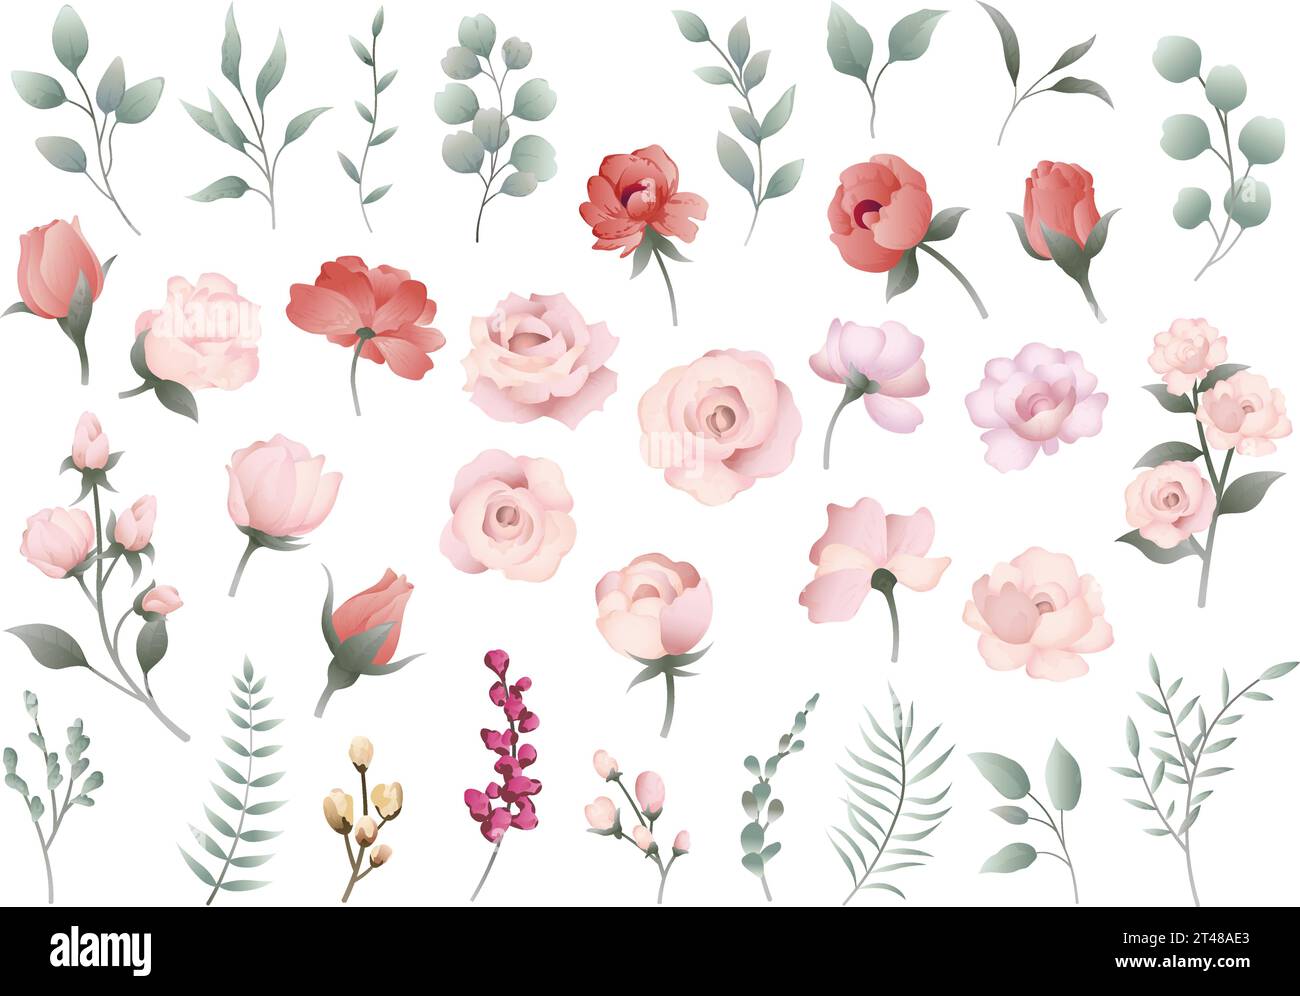 Fiore vettoriale pastello ed elemento botanico Set di illustrazioni isolato su sfondo bianco. Illustrazione Vettoriale